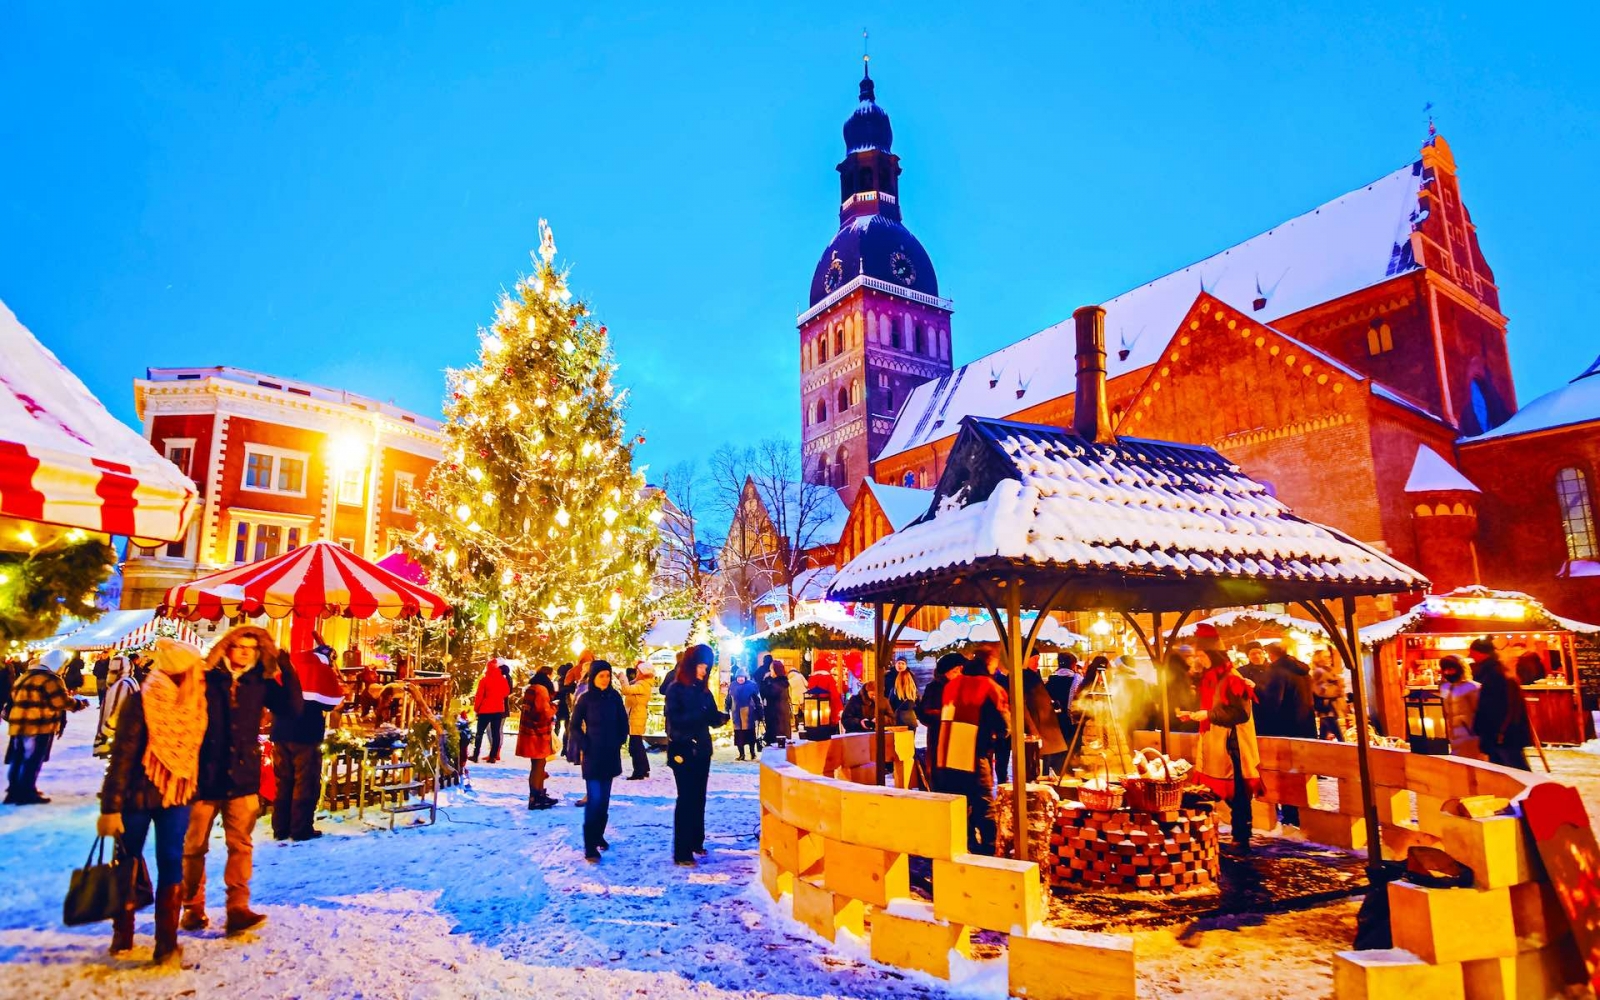 Paisaje urbano nocturno con mercado navideño en la plaza de la catedral Dome en Winter Riga, Letonia.  Feria de Adviento Decoración y Puestos con Artesanía